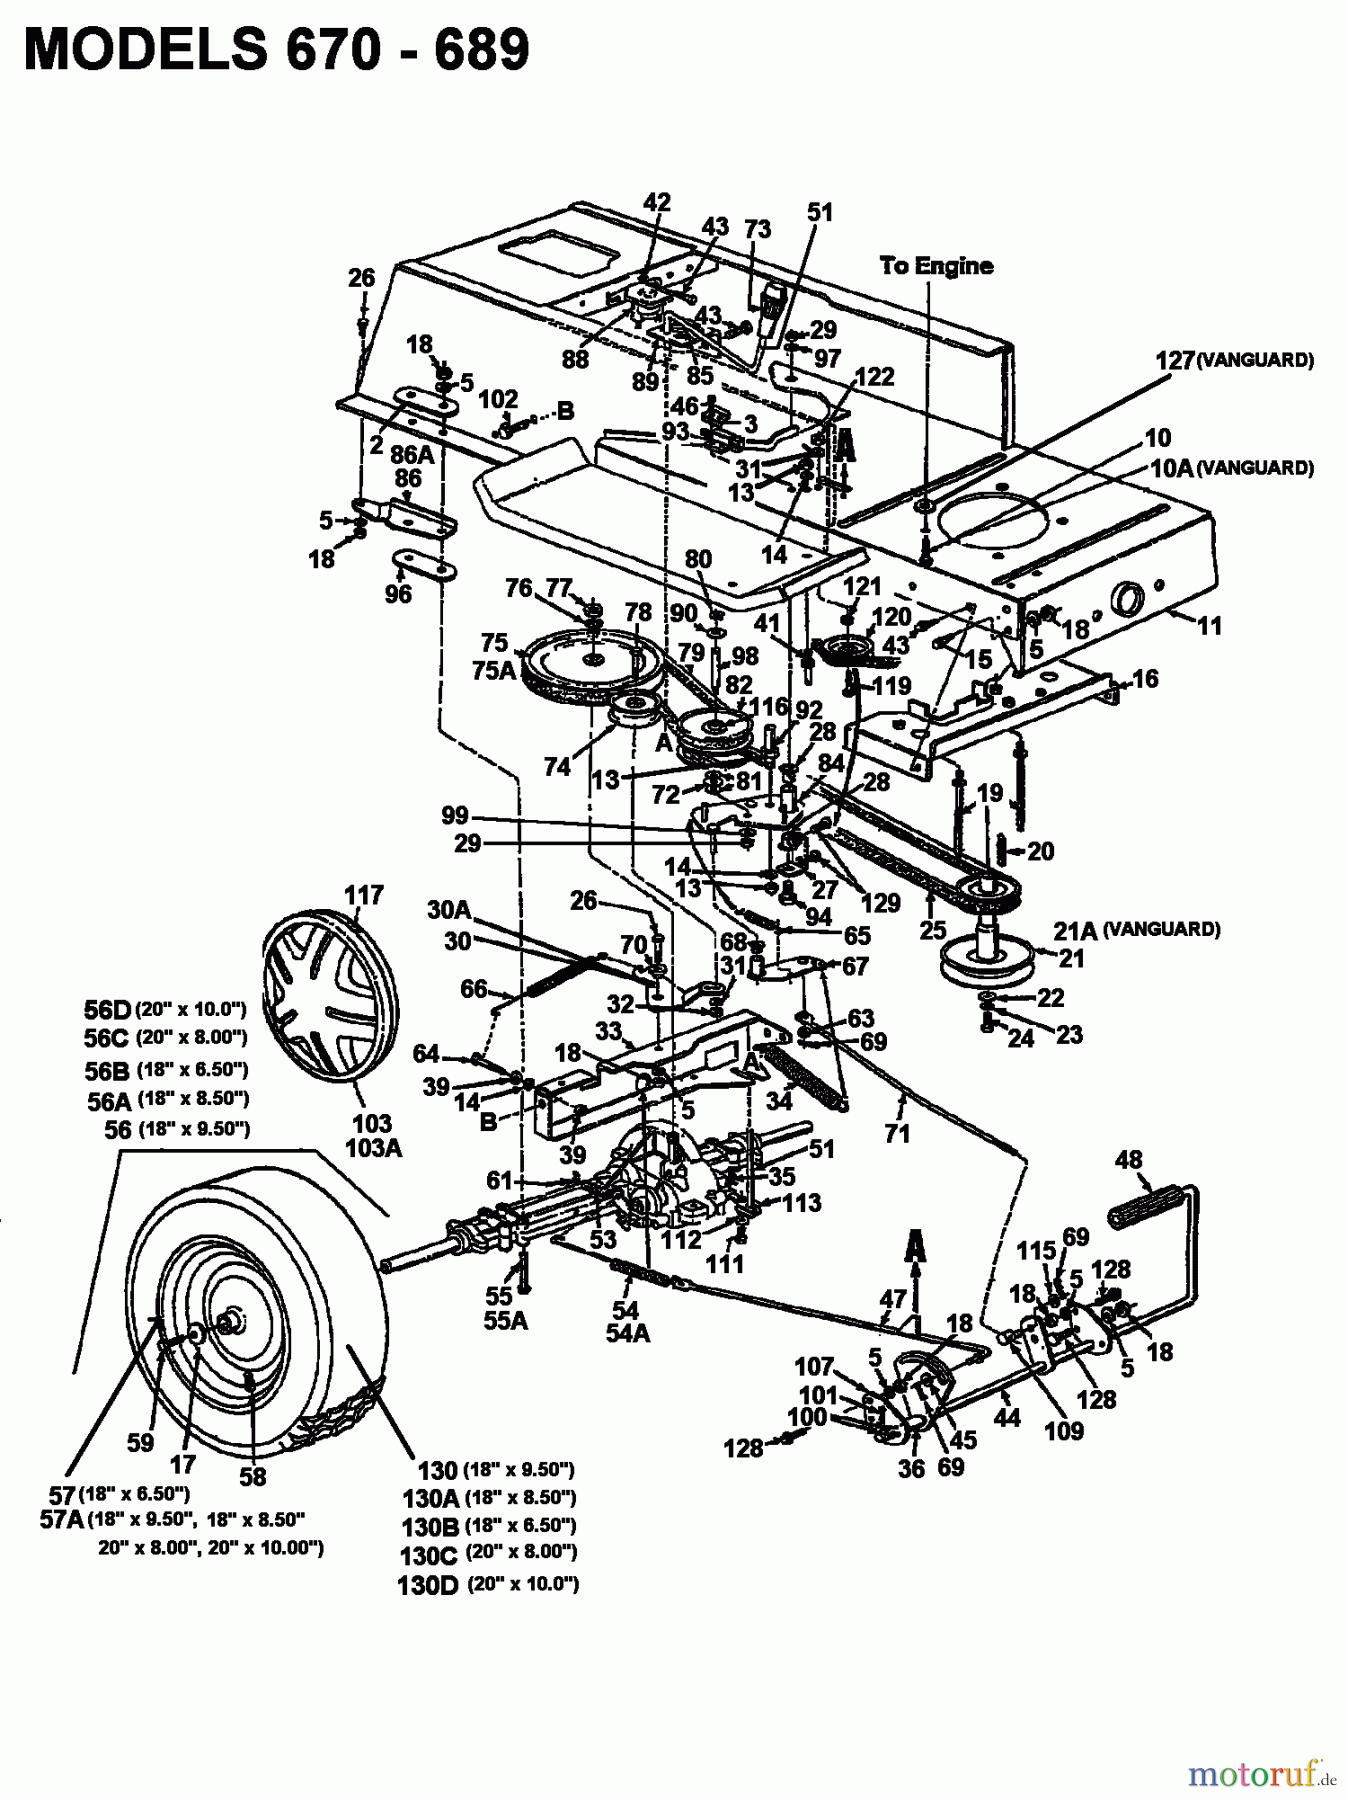  Columbia Rasentraktoren 112/960 N 132-650F626  (1992) Fahrantrieb, Motorkeilriemenscheibe, Pedal, Räder hinten